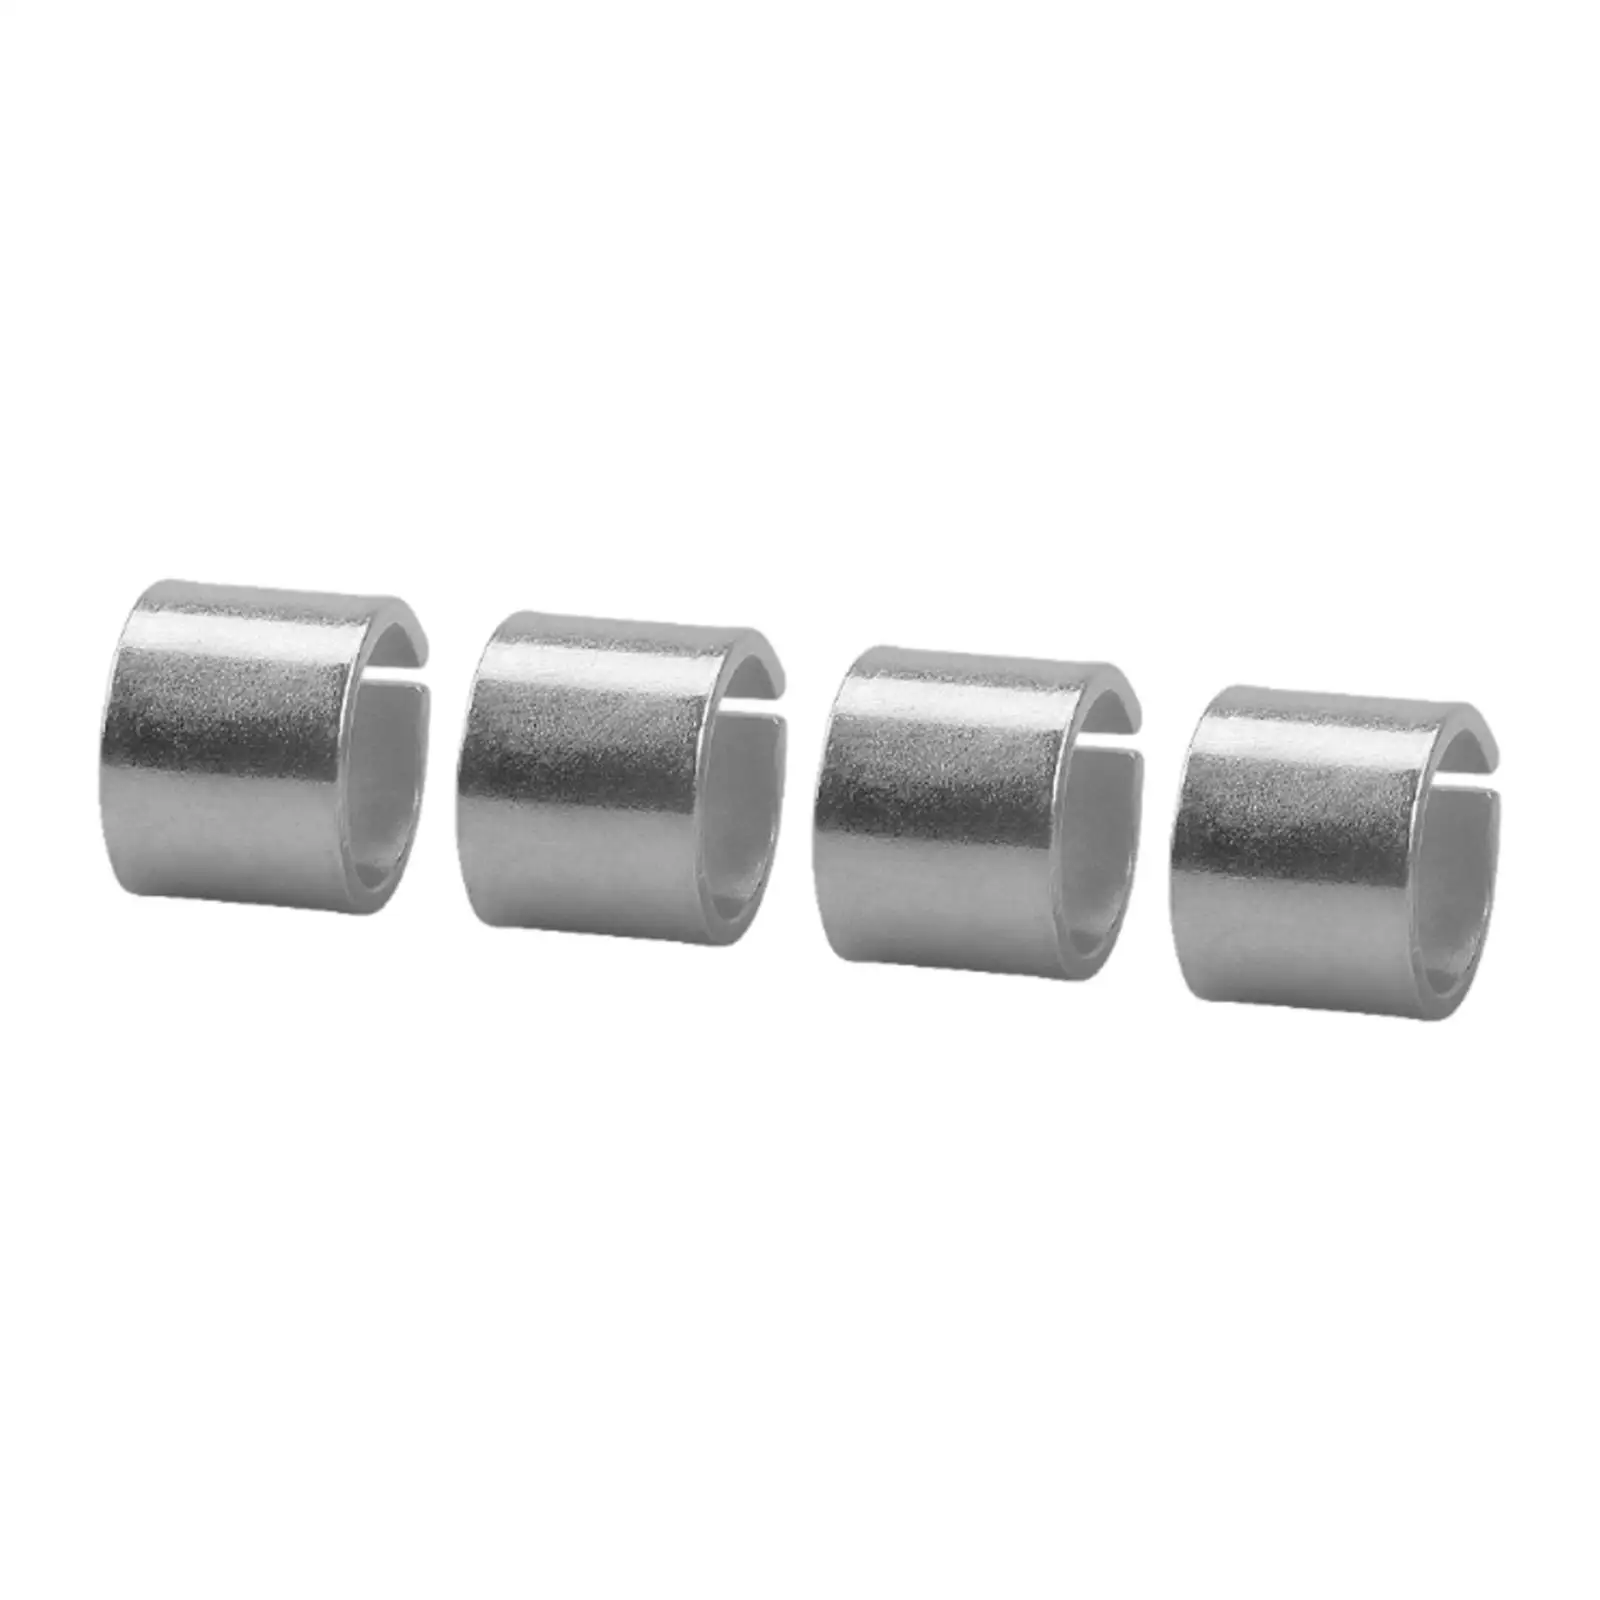 4x Cylinder Head Dowel Pin for Chevy ls LT L33 LR4 L82 L83 L84L86